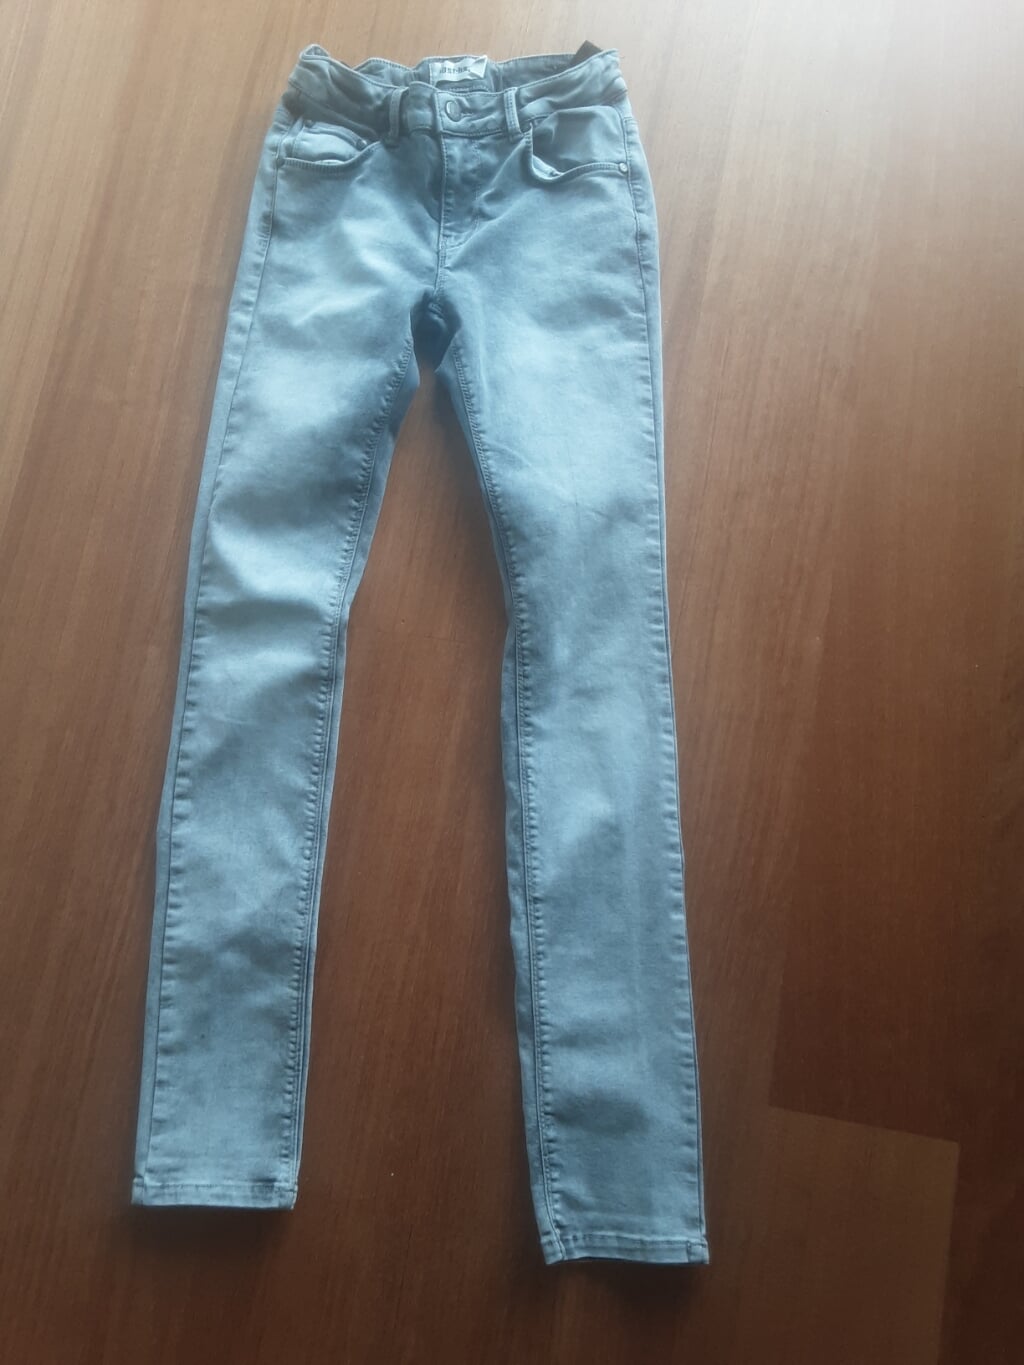 Mooie spijkerbroek grijs smal jongens mt 164 € 5,00